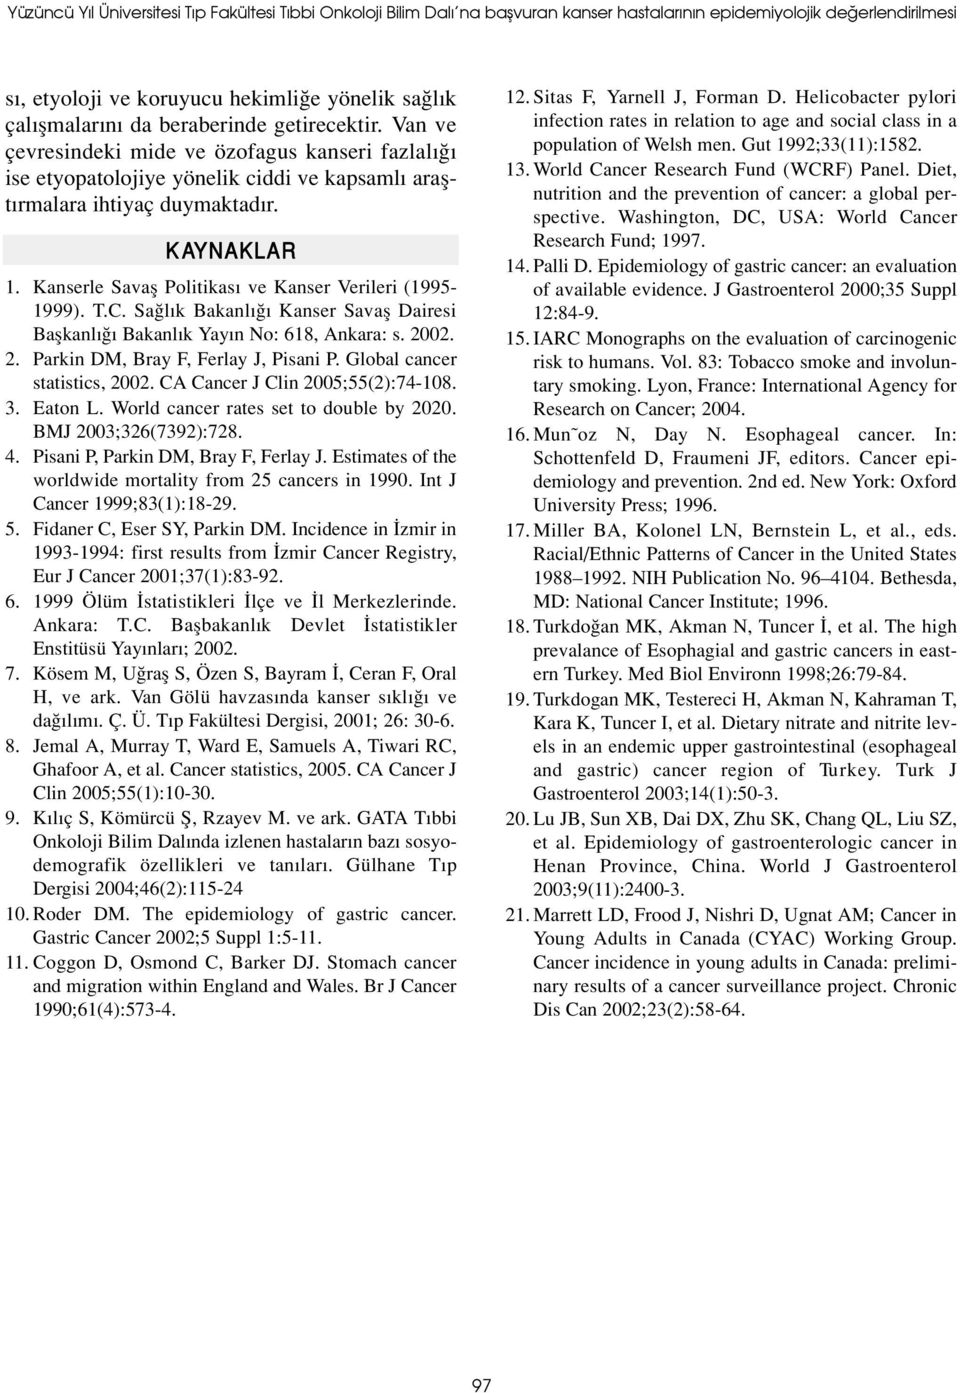 Kanserle Savafl Politikas ve Kanser Verileri (1995-1999). T.C. Sa l k Bakanl Kanser Savafl Dairesi Baflkanl Bakanl k Yay n No: 618, Ankara: s. 2002. 2. Parkin DM, Bray F, Ferlay J, Pisani P.